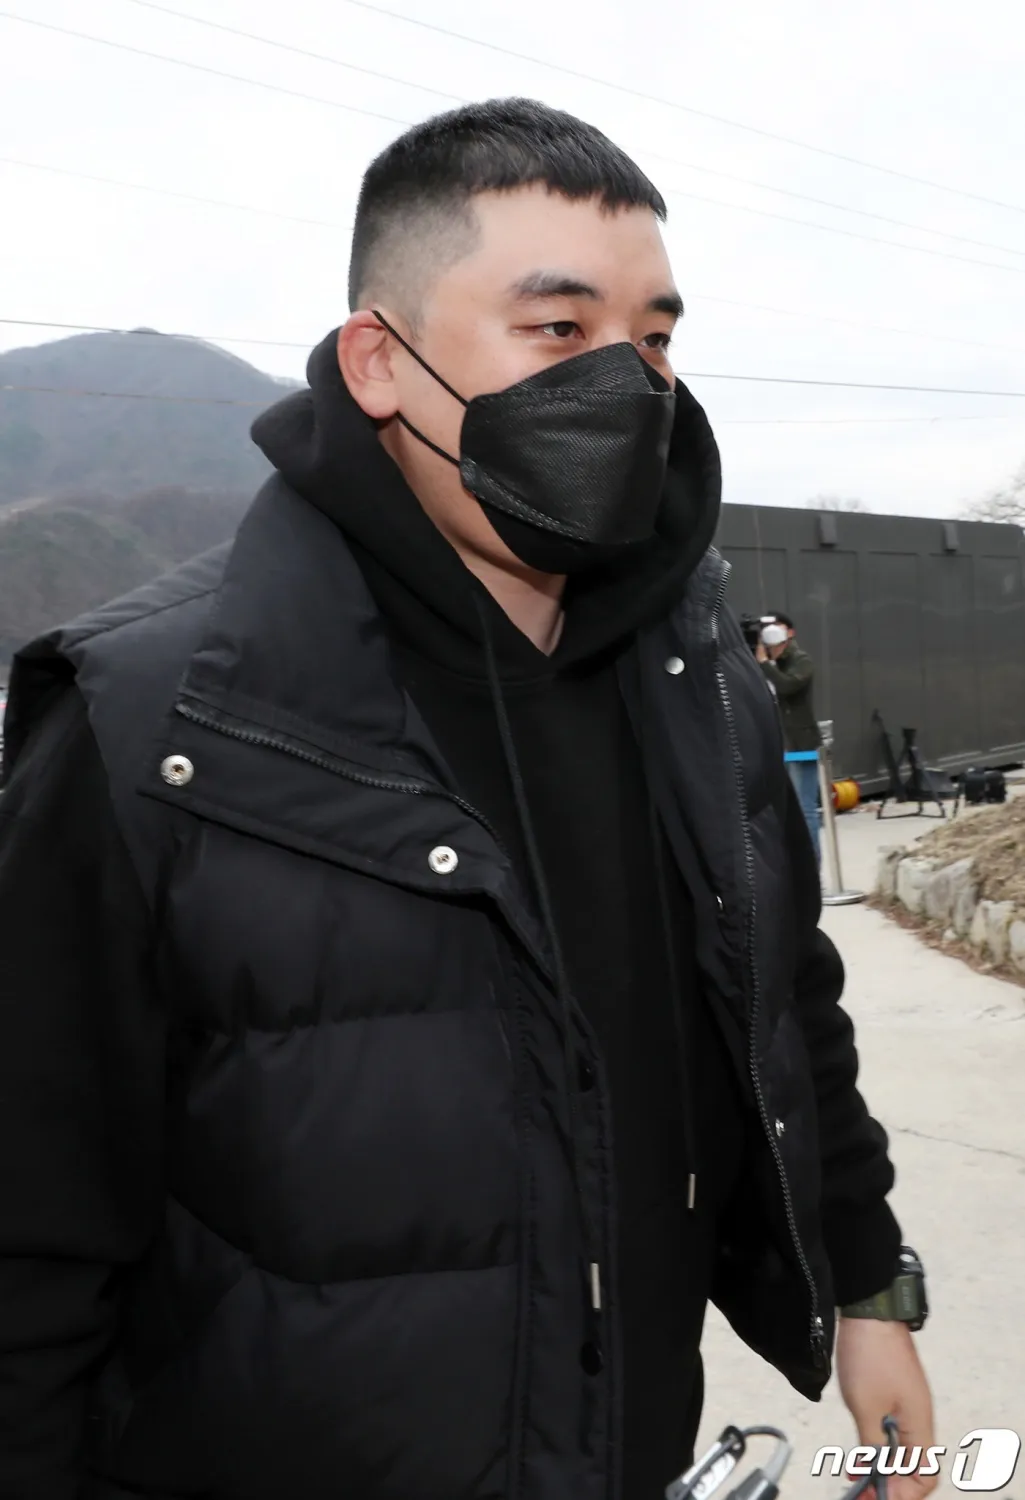 Сингрі Гарнерс знищив зенітну зброю за те, що останнє з’явилося ім’я BIGBANG